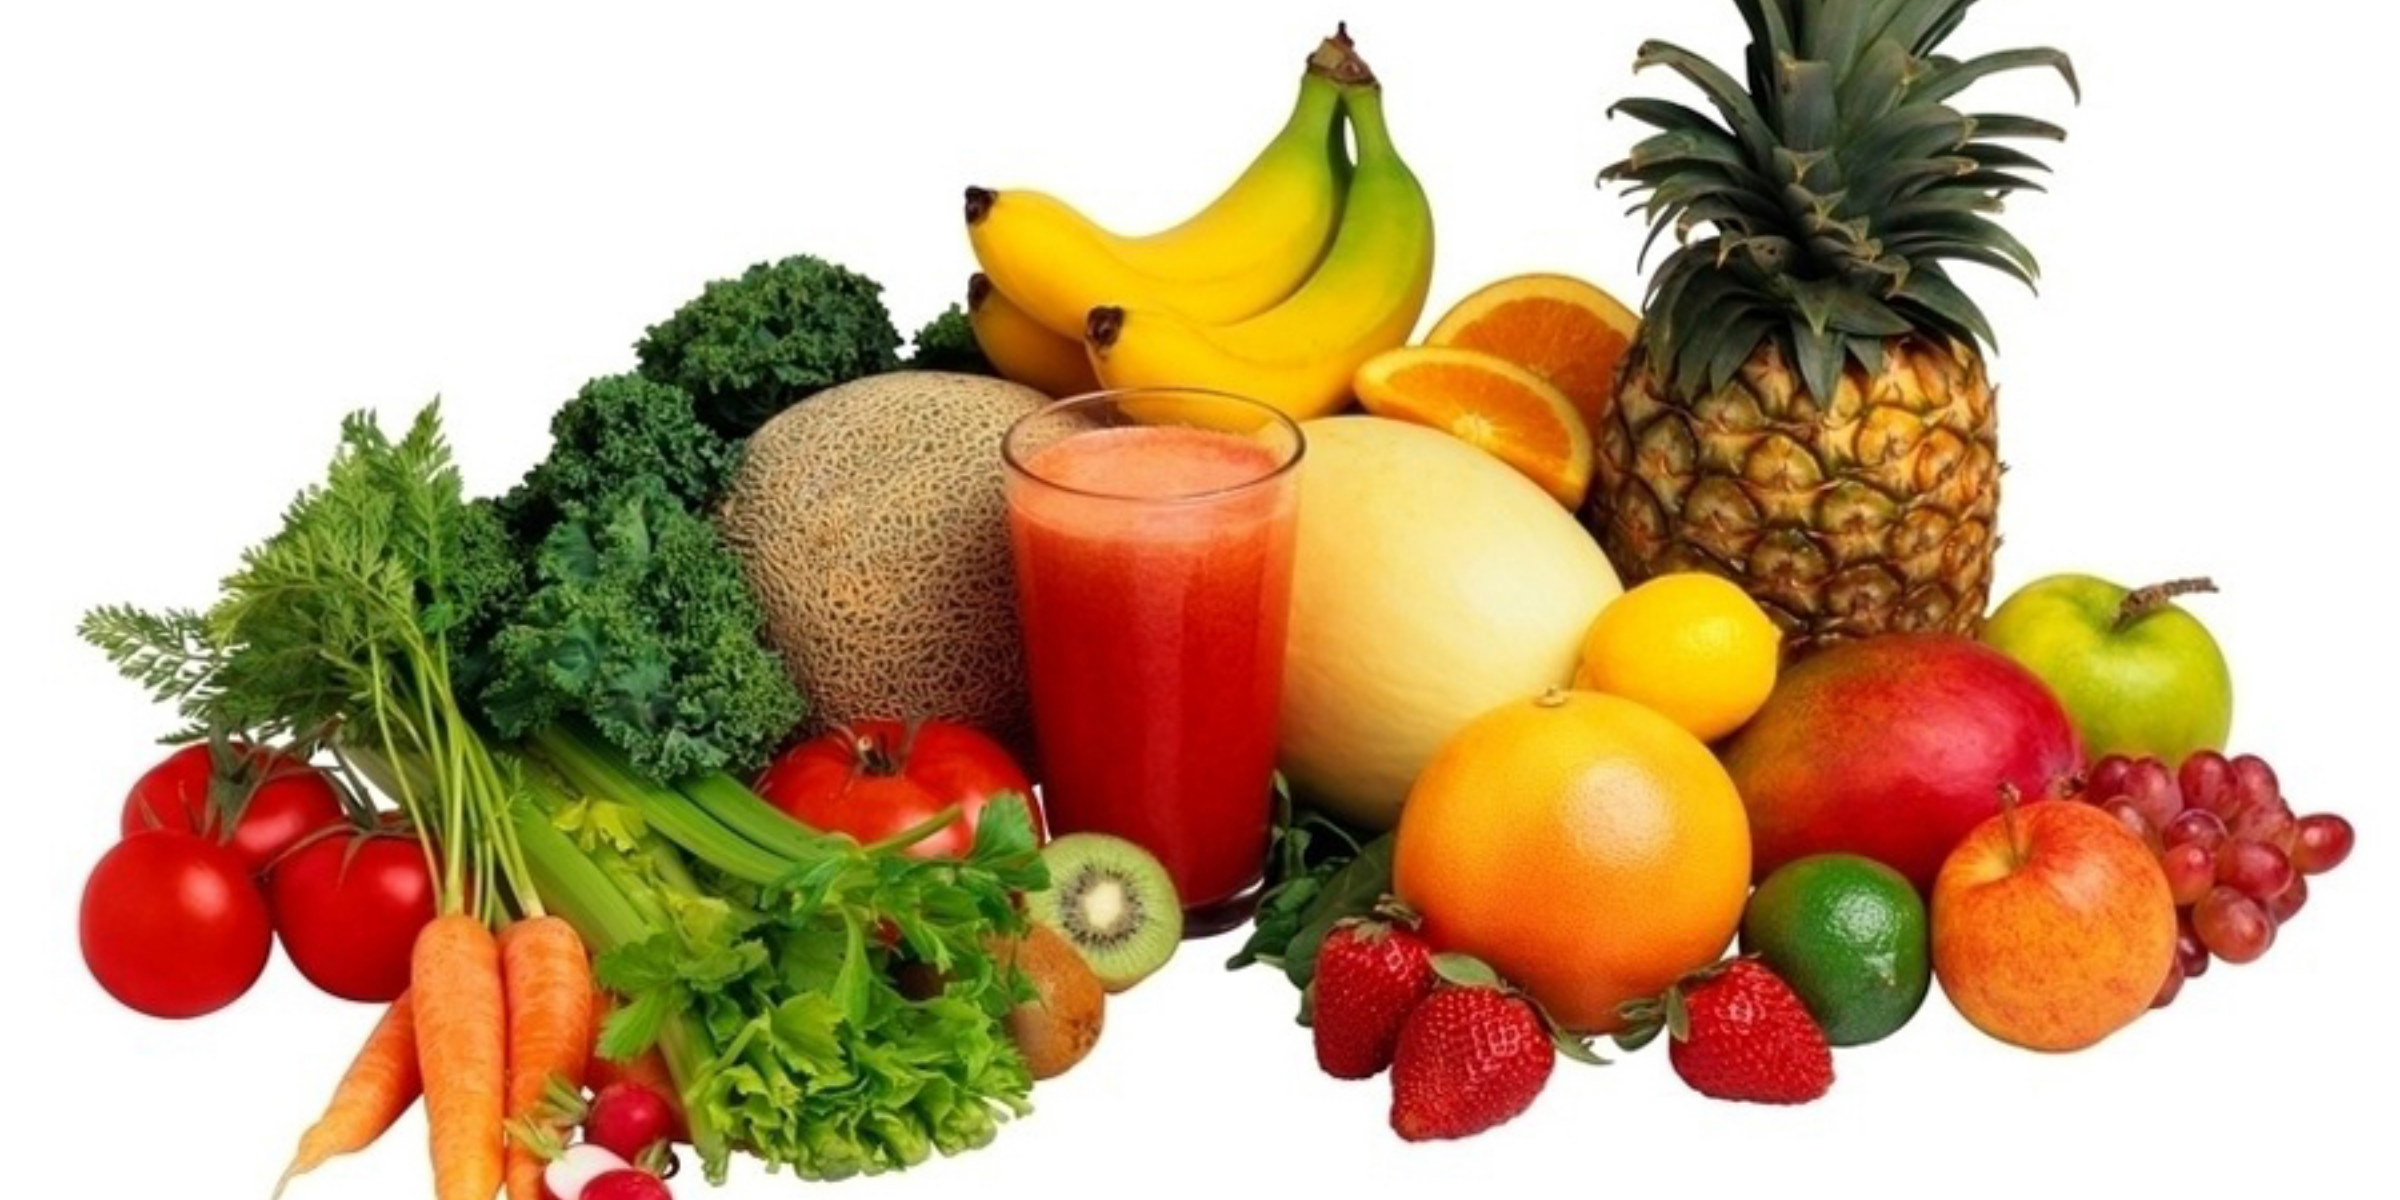 Thực ăn bạn nạp vào cơ thể liên quan mật thiết đến sức khoẻ của bạn đấy.